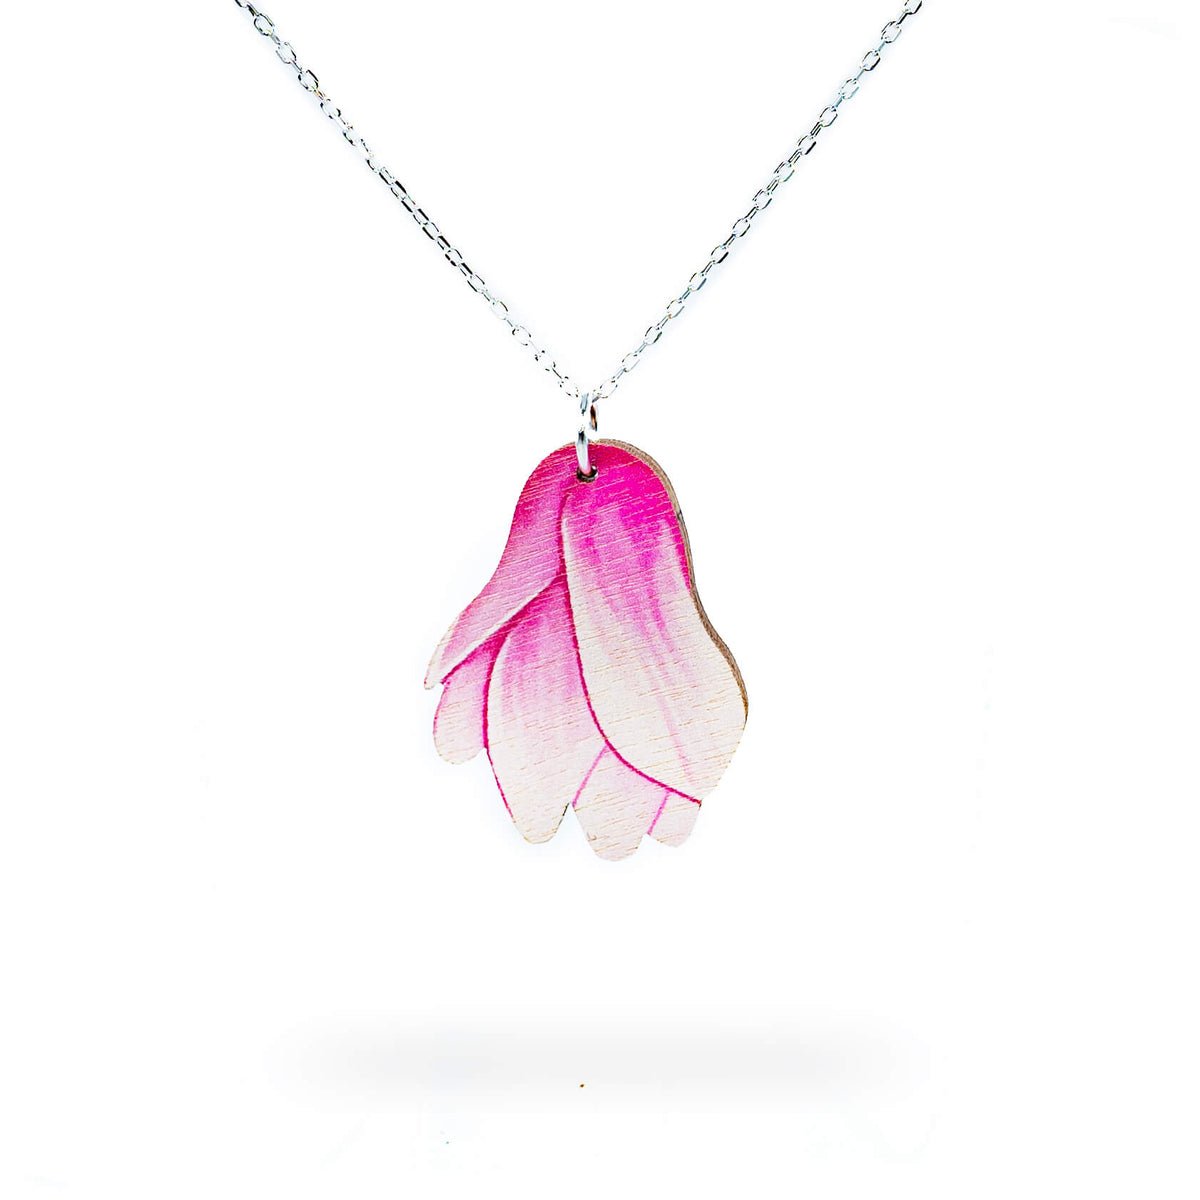 Japanilaisessa kulttuurissa magnoliat symboloivat rakkautta luontoa kohtaan, sinnikkyyttä ja arvokkuutta. Yleisesti ottaen vaaleanpunaisen magnolian on ajateltu symboloivan nuorekkuutta, viattomuutta ja iloa. Tämä kaulakoru asettuu lähelle sydäntä - merkityksellinen lahjaidea. Käsintehty Suomessa.